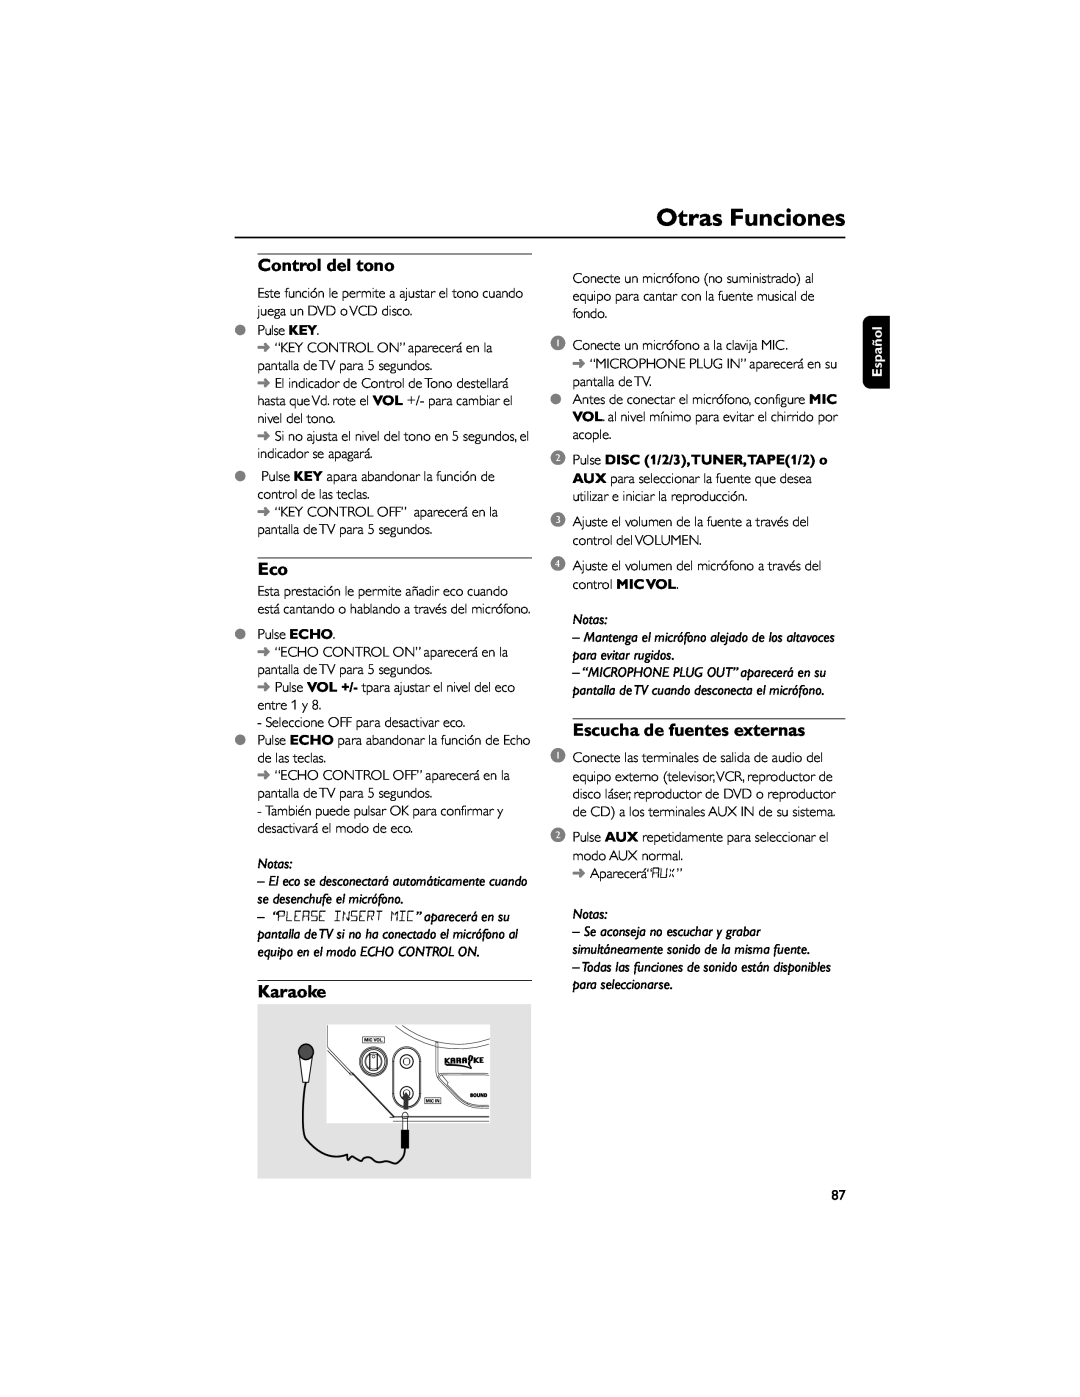 Philips FWD792 user manual Control del tono, Karaoke, Escucha de fuentes externas, Otras Funciones, Notas, Español 